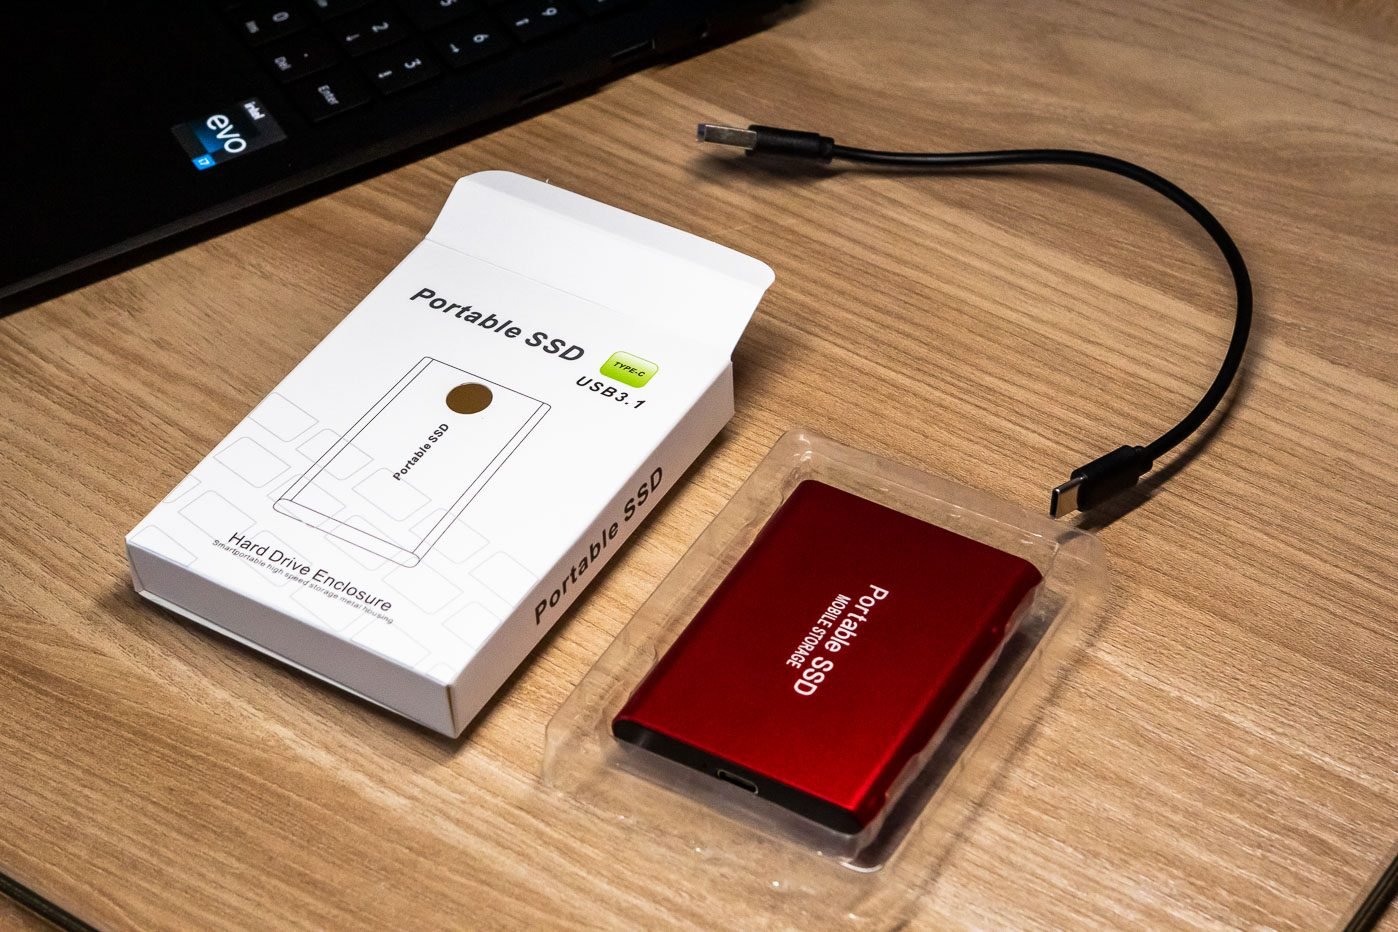 Cette clé USB Sandisk est proposée à un prix défiant toute